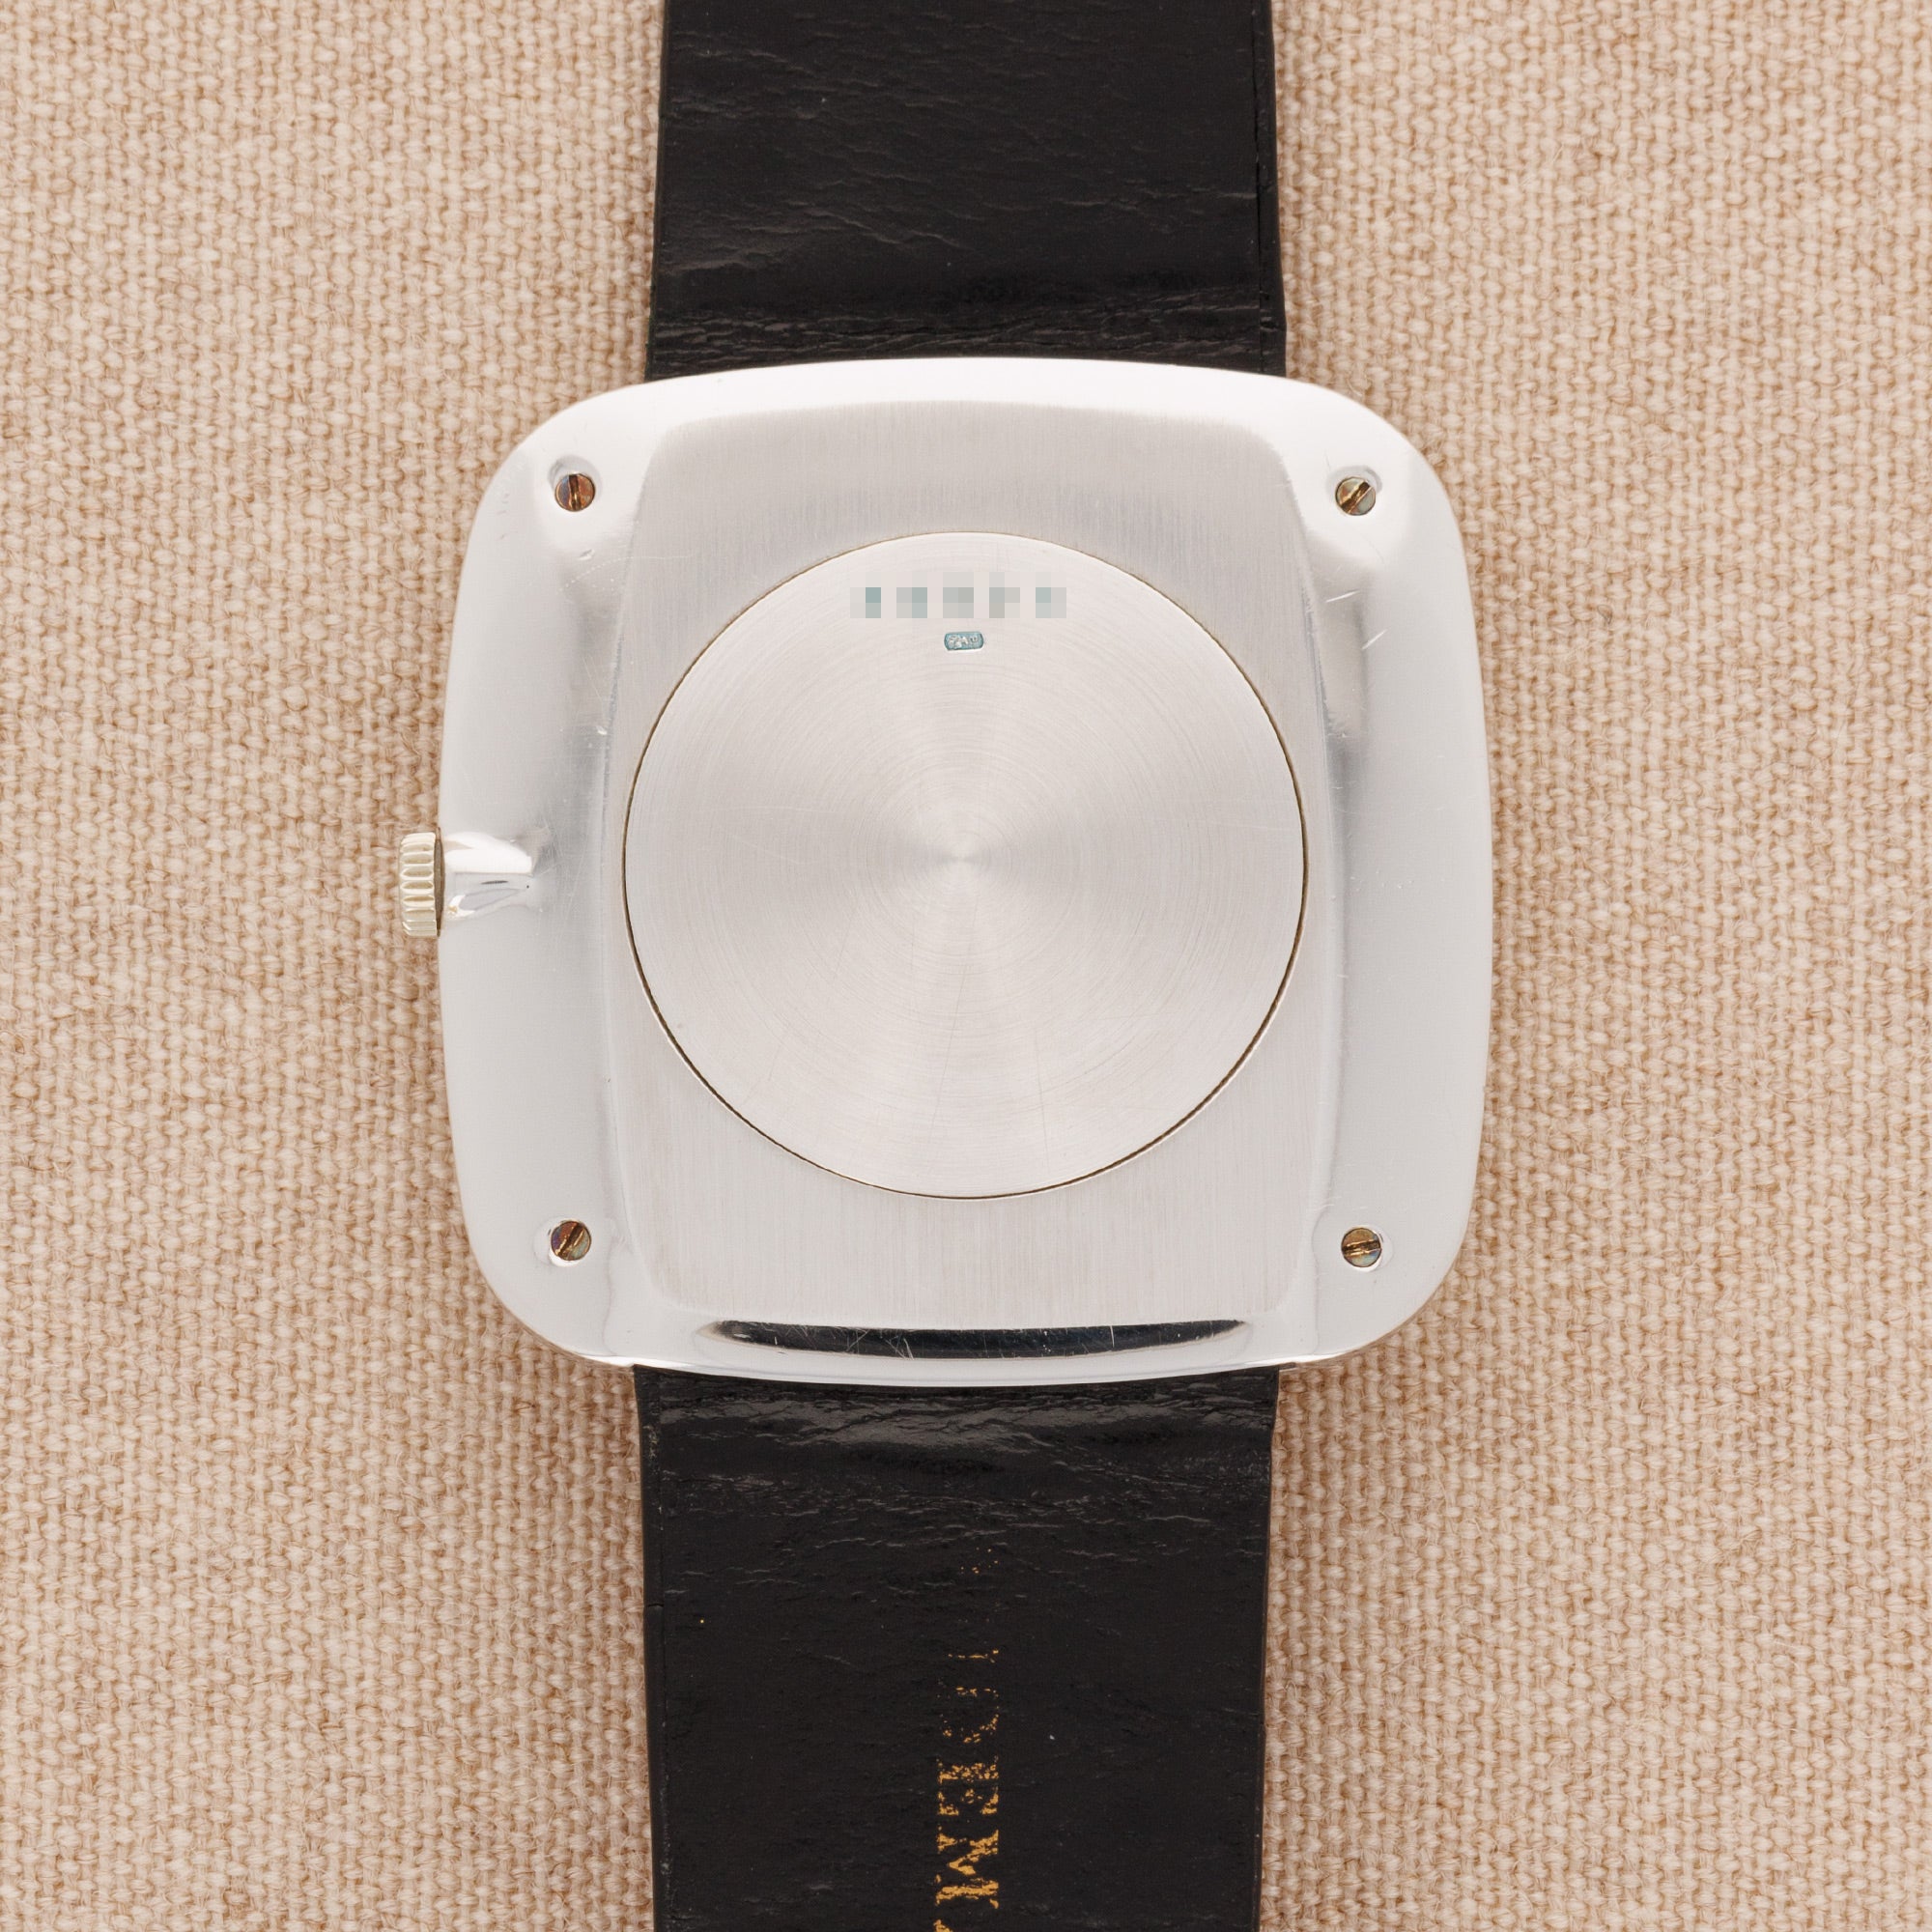 Audemars Piguet - Audemars Piguet White Gold Mechanical TV Shaped Watch - The Keystone Watches